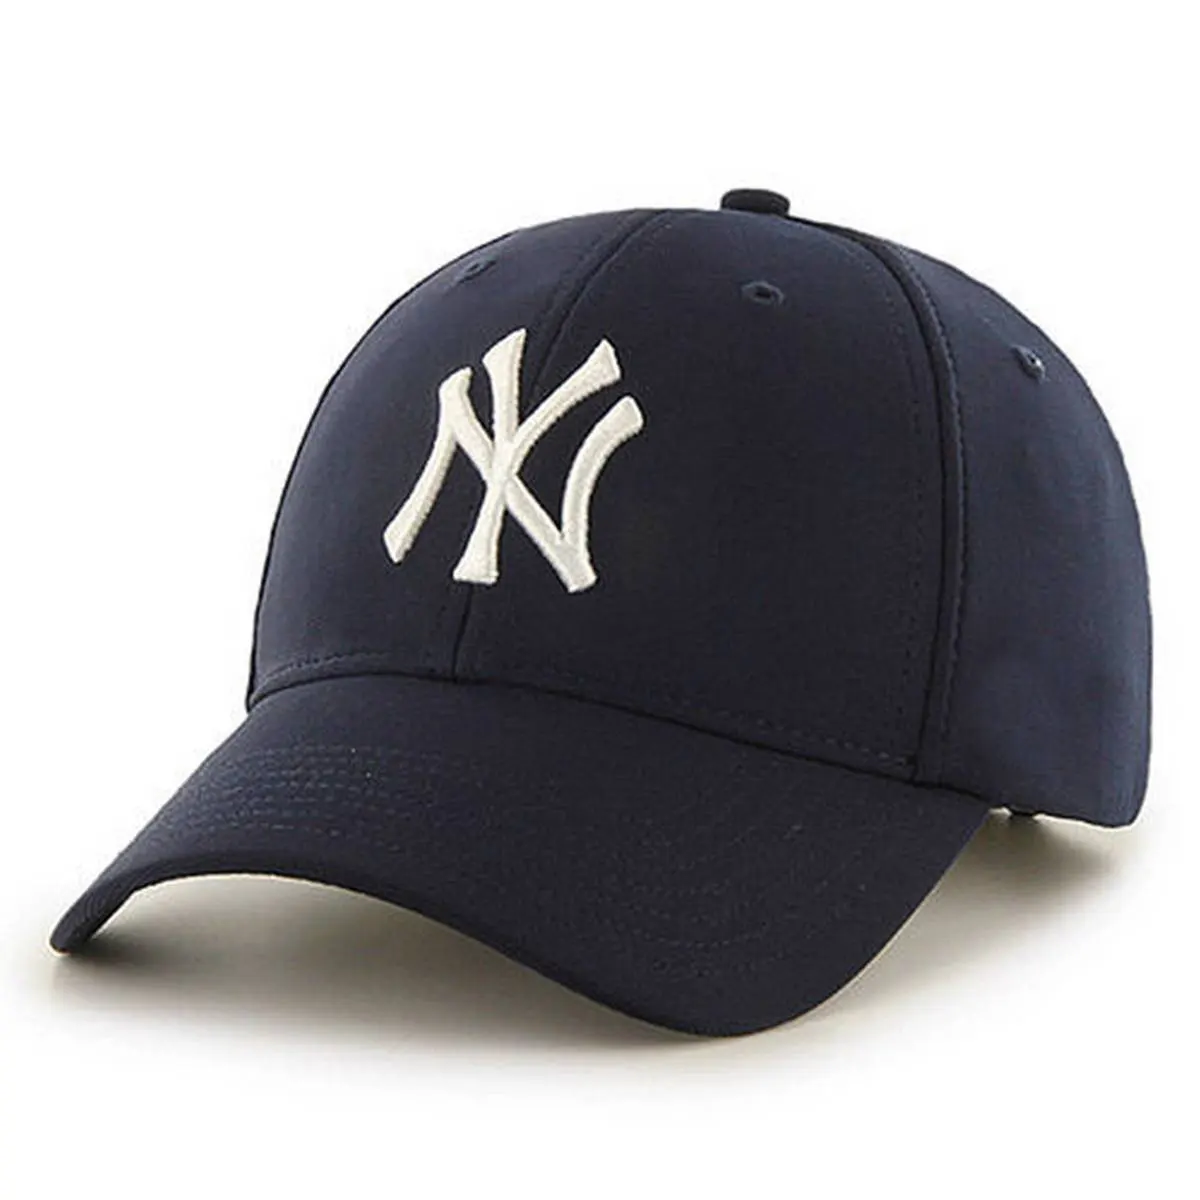 Chapéus esportivos fabricantes do oem, chapéus para homens e mulheres personalizados